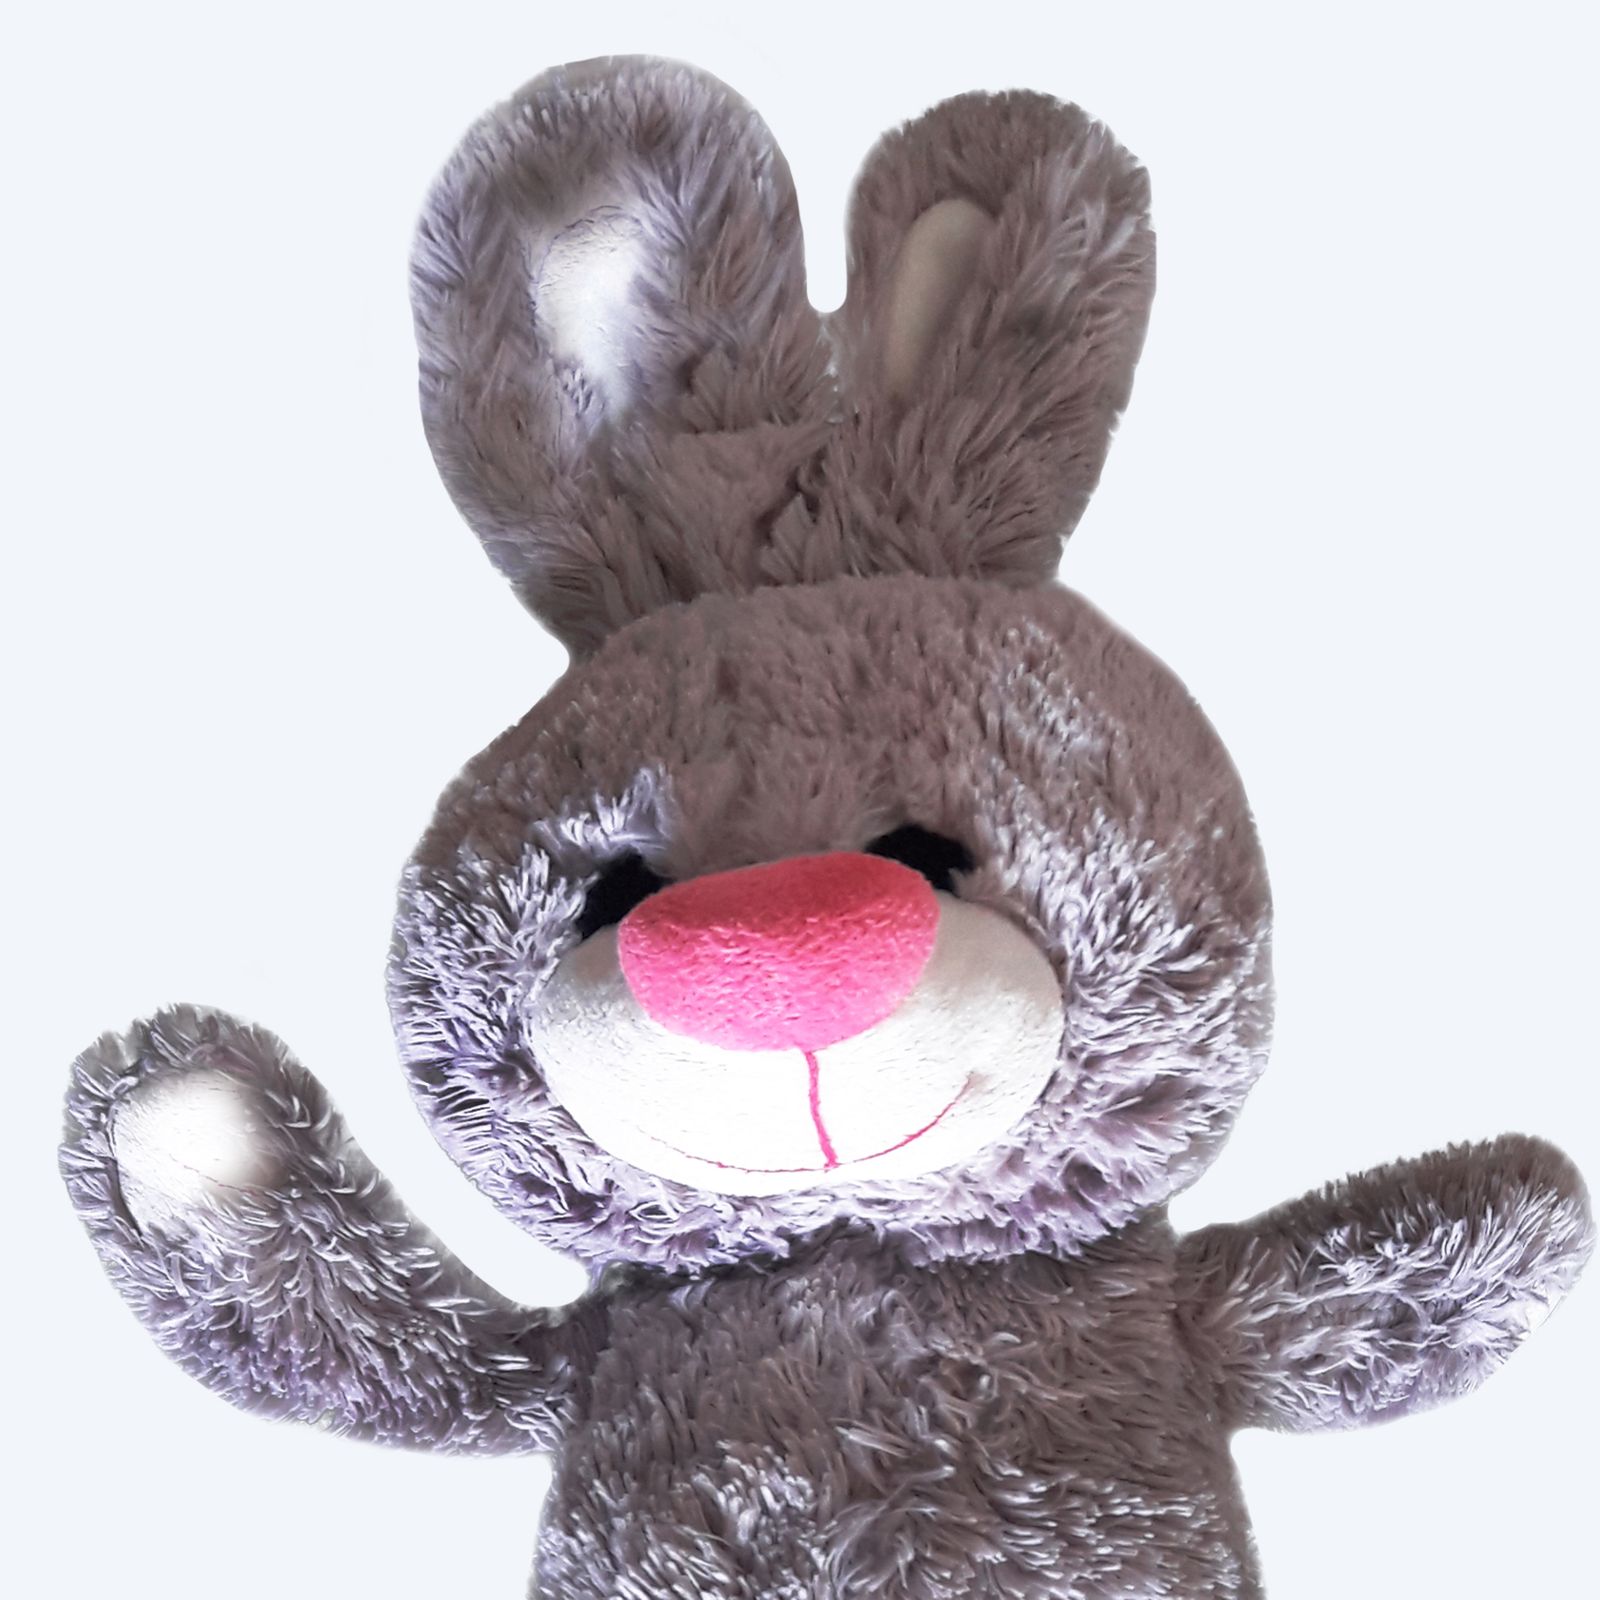 عروسک طرح خرگوش مدل پشمالو کد 287 ارتفاع 48 سانتی متر -  - 4